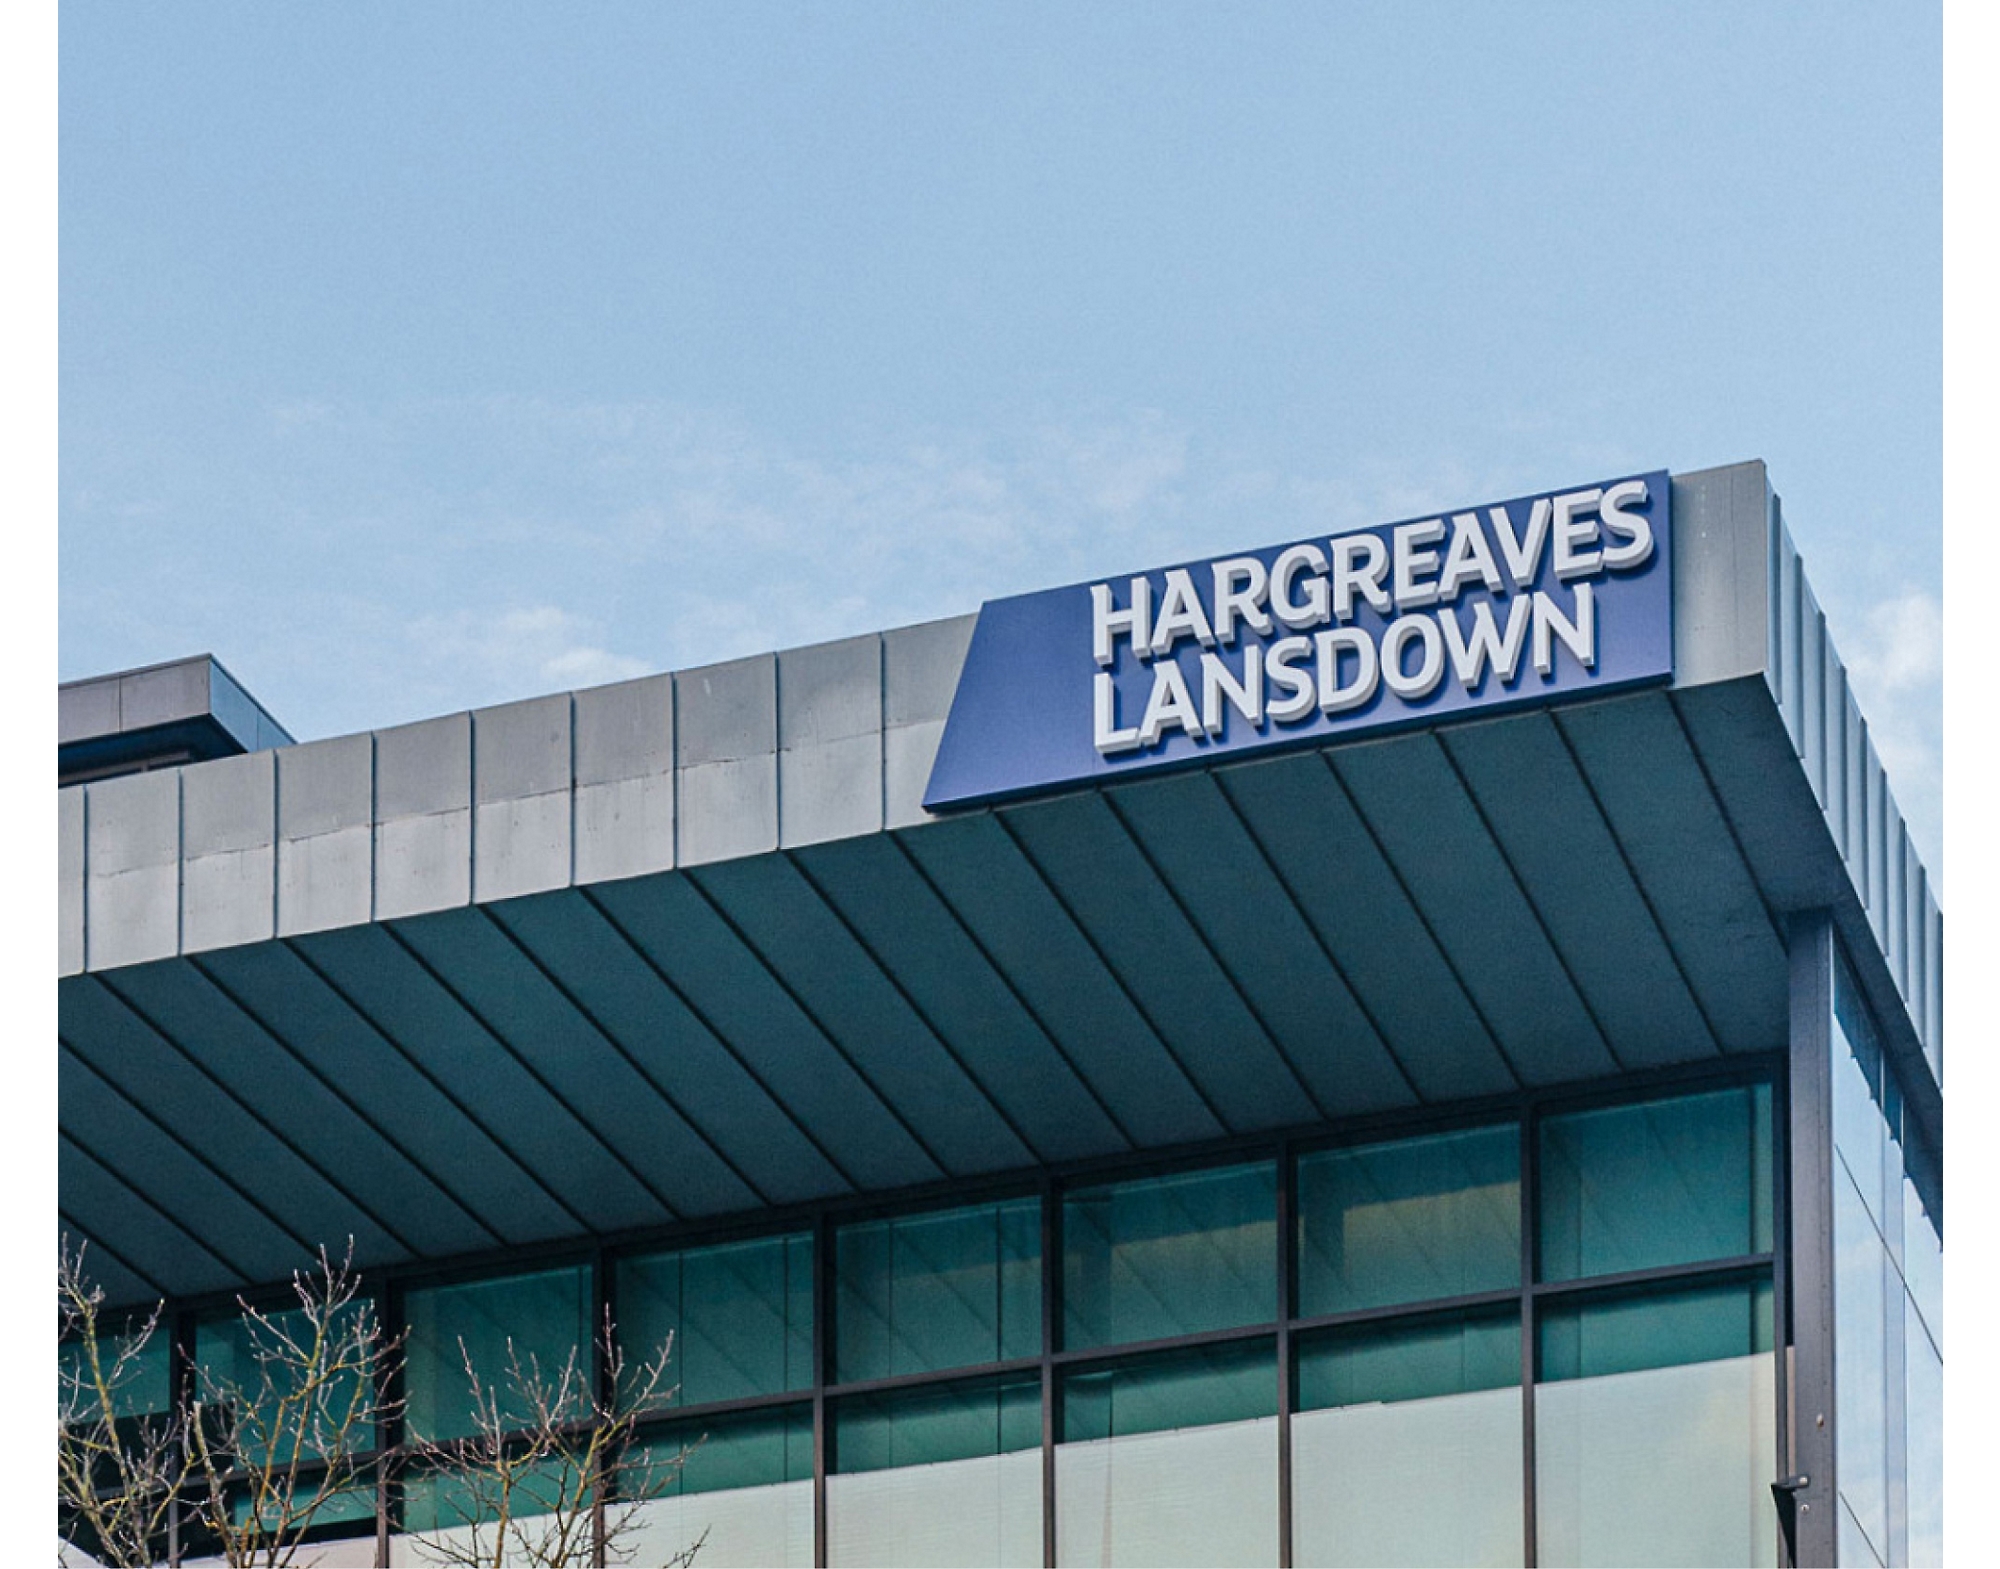 現代化建築物的頂端有「Hargreaves Lansdown」標誌，背景為晴朗蔚藍的天空。